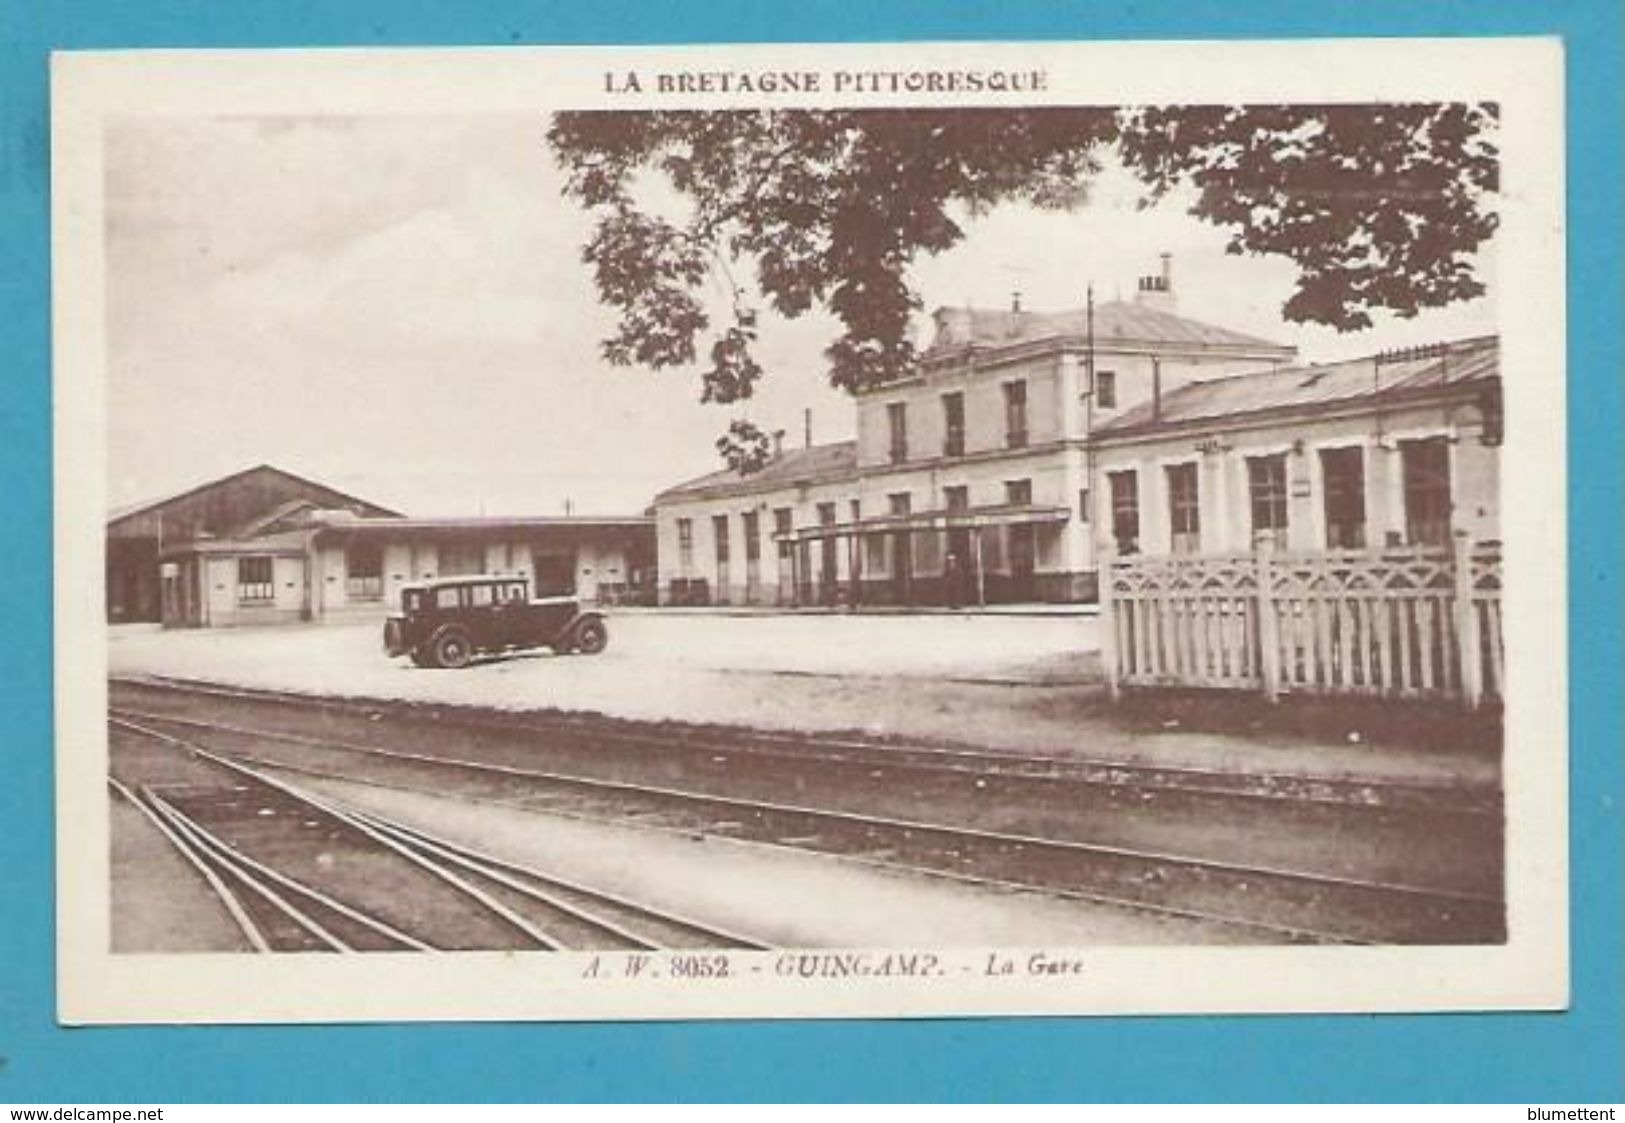 CPSM A.W 8052 -  Chemin De Fer La Gare De GUINGAMP 22 - Guingamp